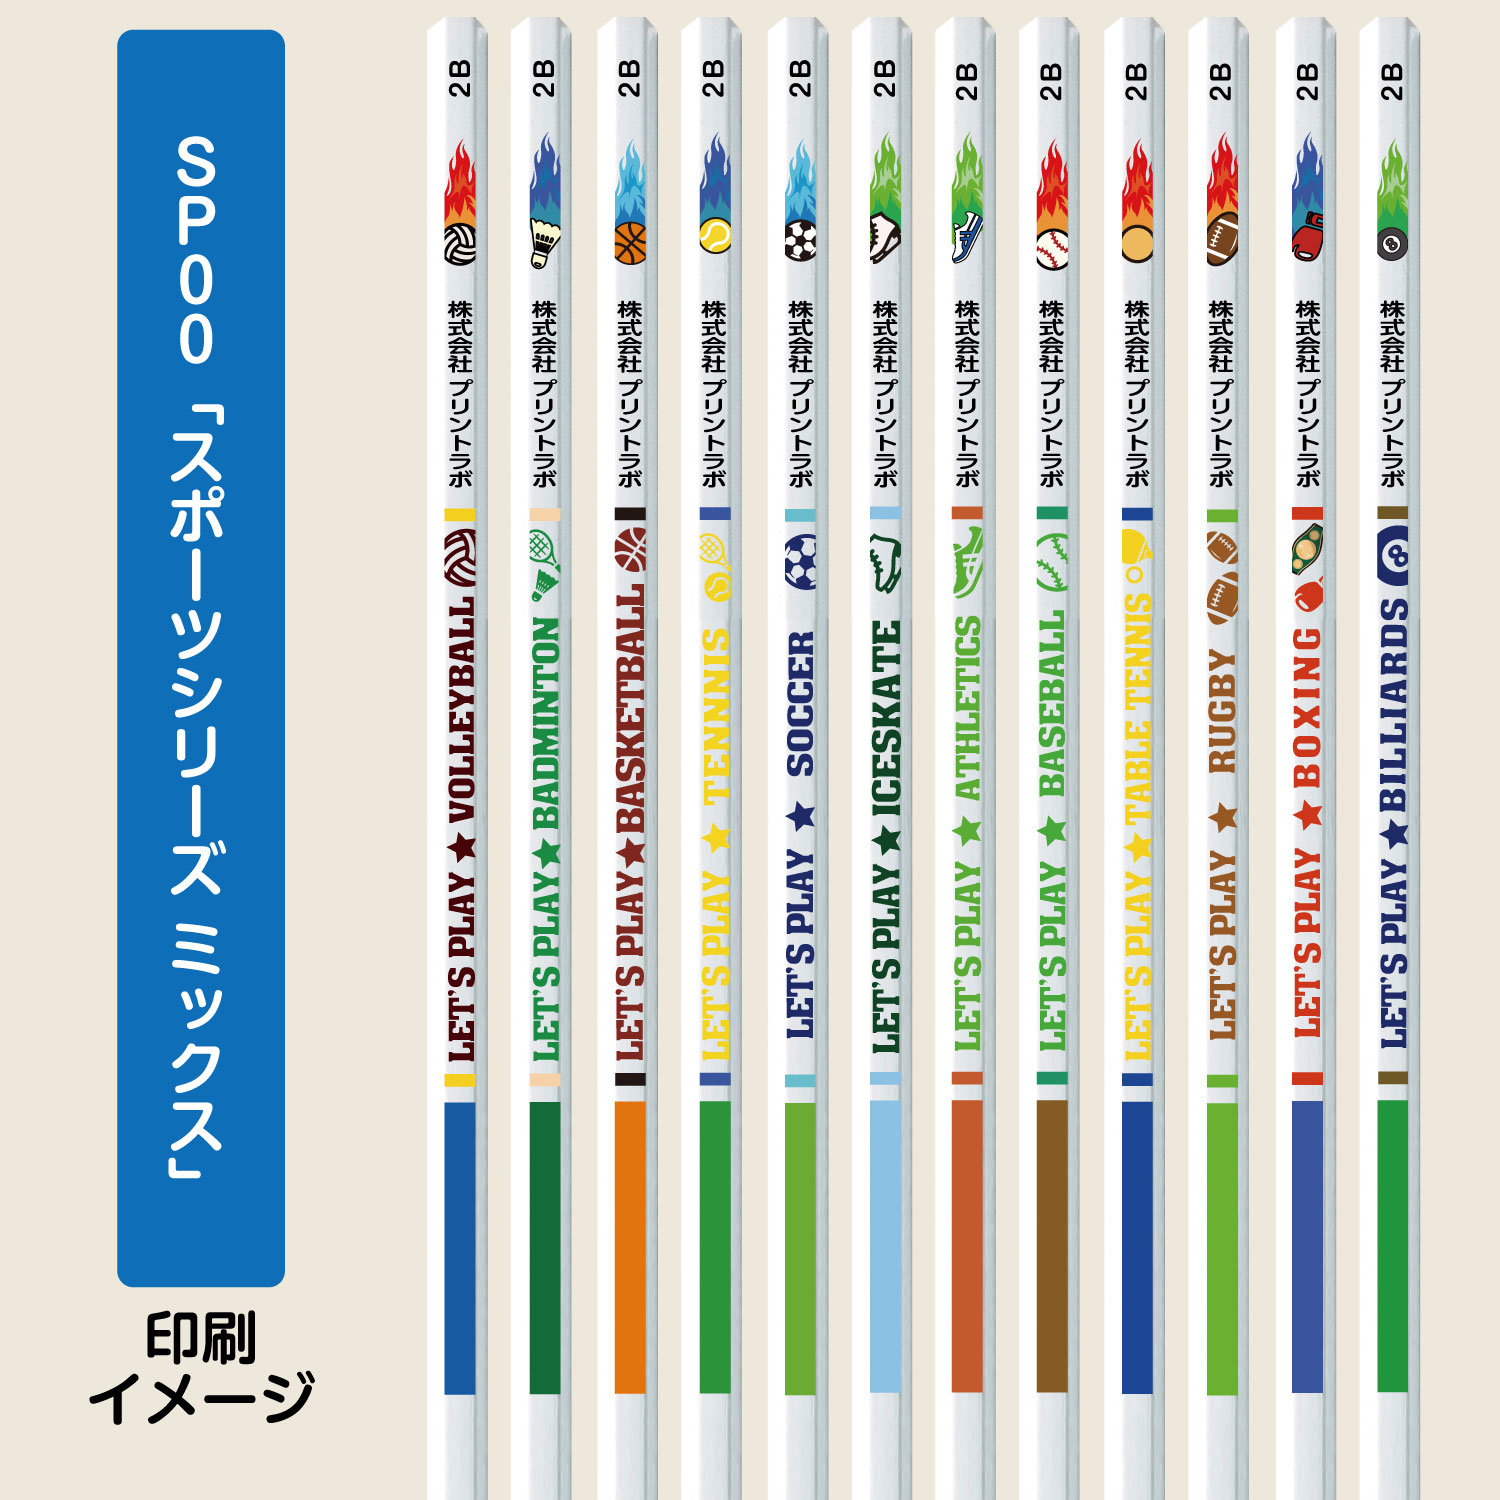 名入れ鉛筆セットSP00「スポーツシリーズ ミックス」（六角軸２Ｂホワイト鉛筆12本入り）